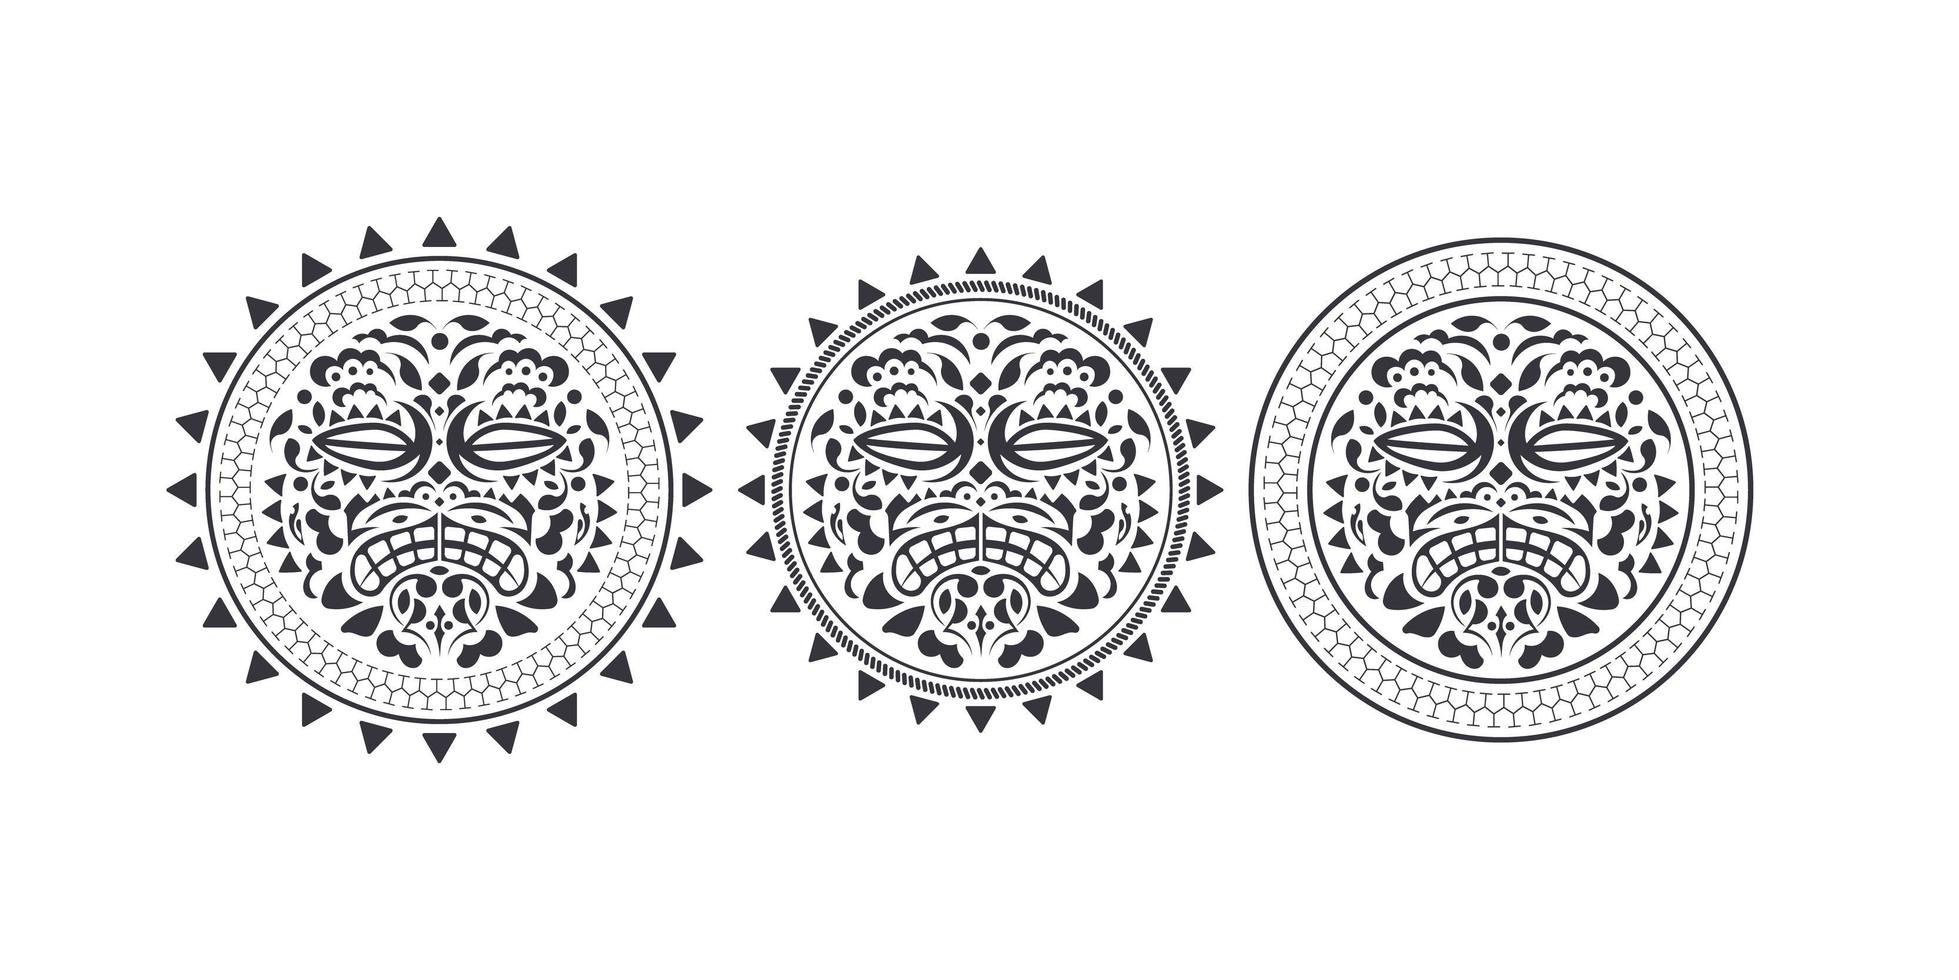 totem de cabeça tiki havaiano e polinésio. ilustração de uma máscara de tiki indígena do havaí e polinésia em preto e branco, os rostos dos deuses com coroas tradicionalmente. vetor